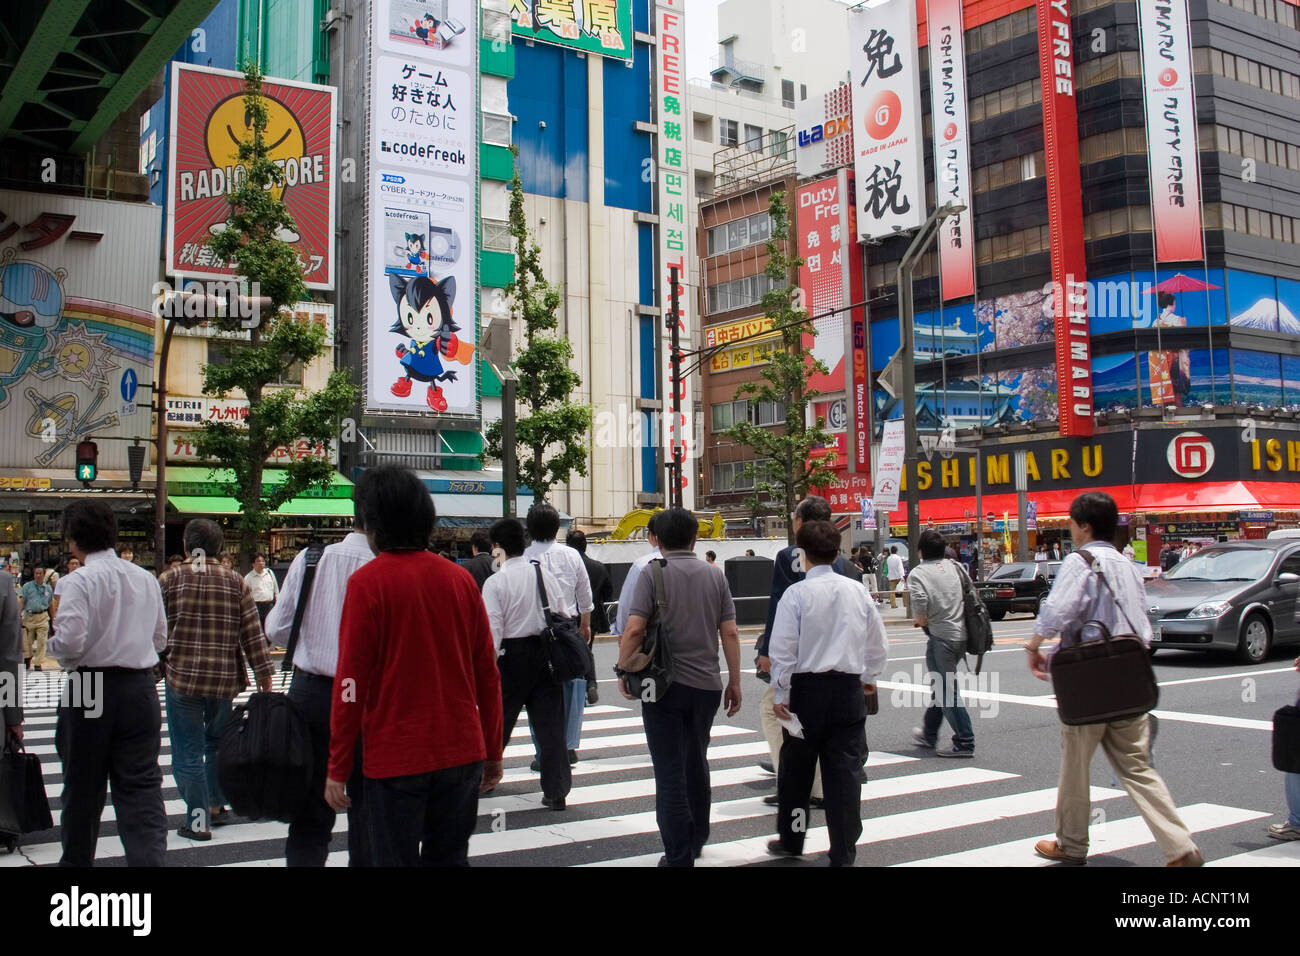 Les personnes qui traversent la rue dans l'électronique d'Akihabara district de Tokyo Japon avec de nombreux signes magasins publicité Banque D'Images